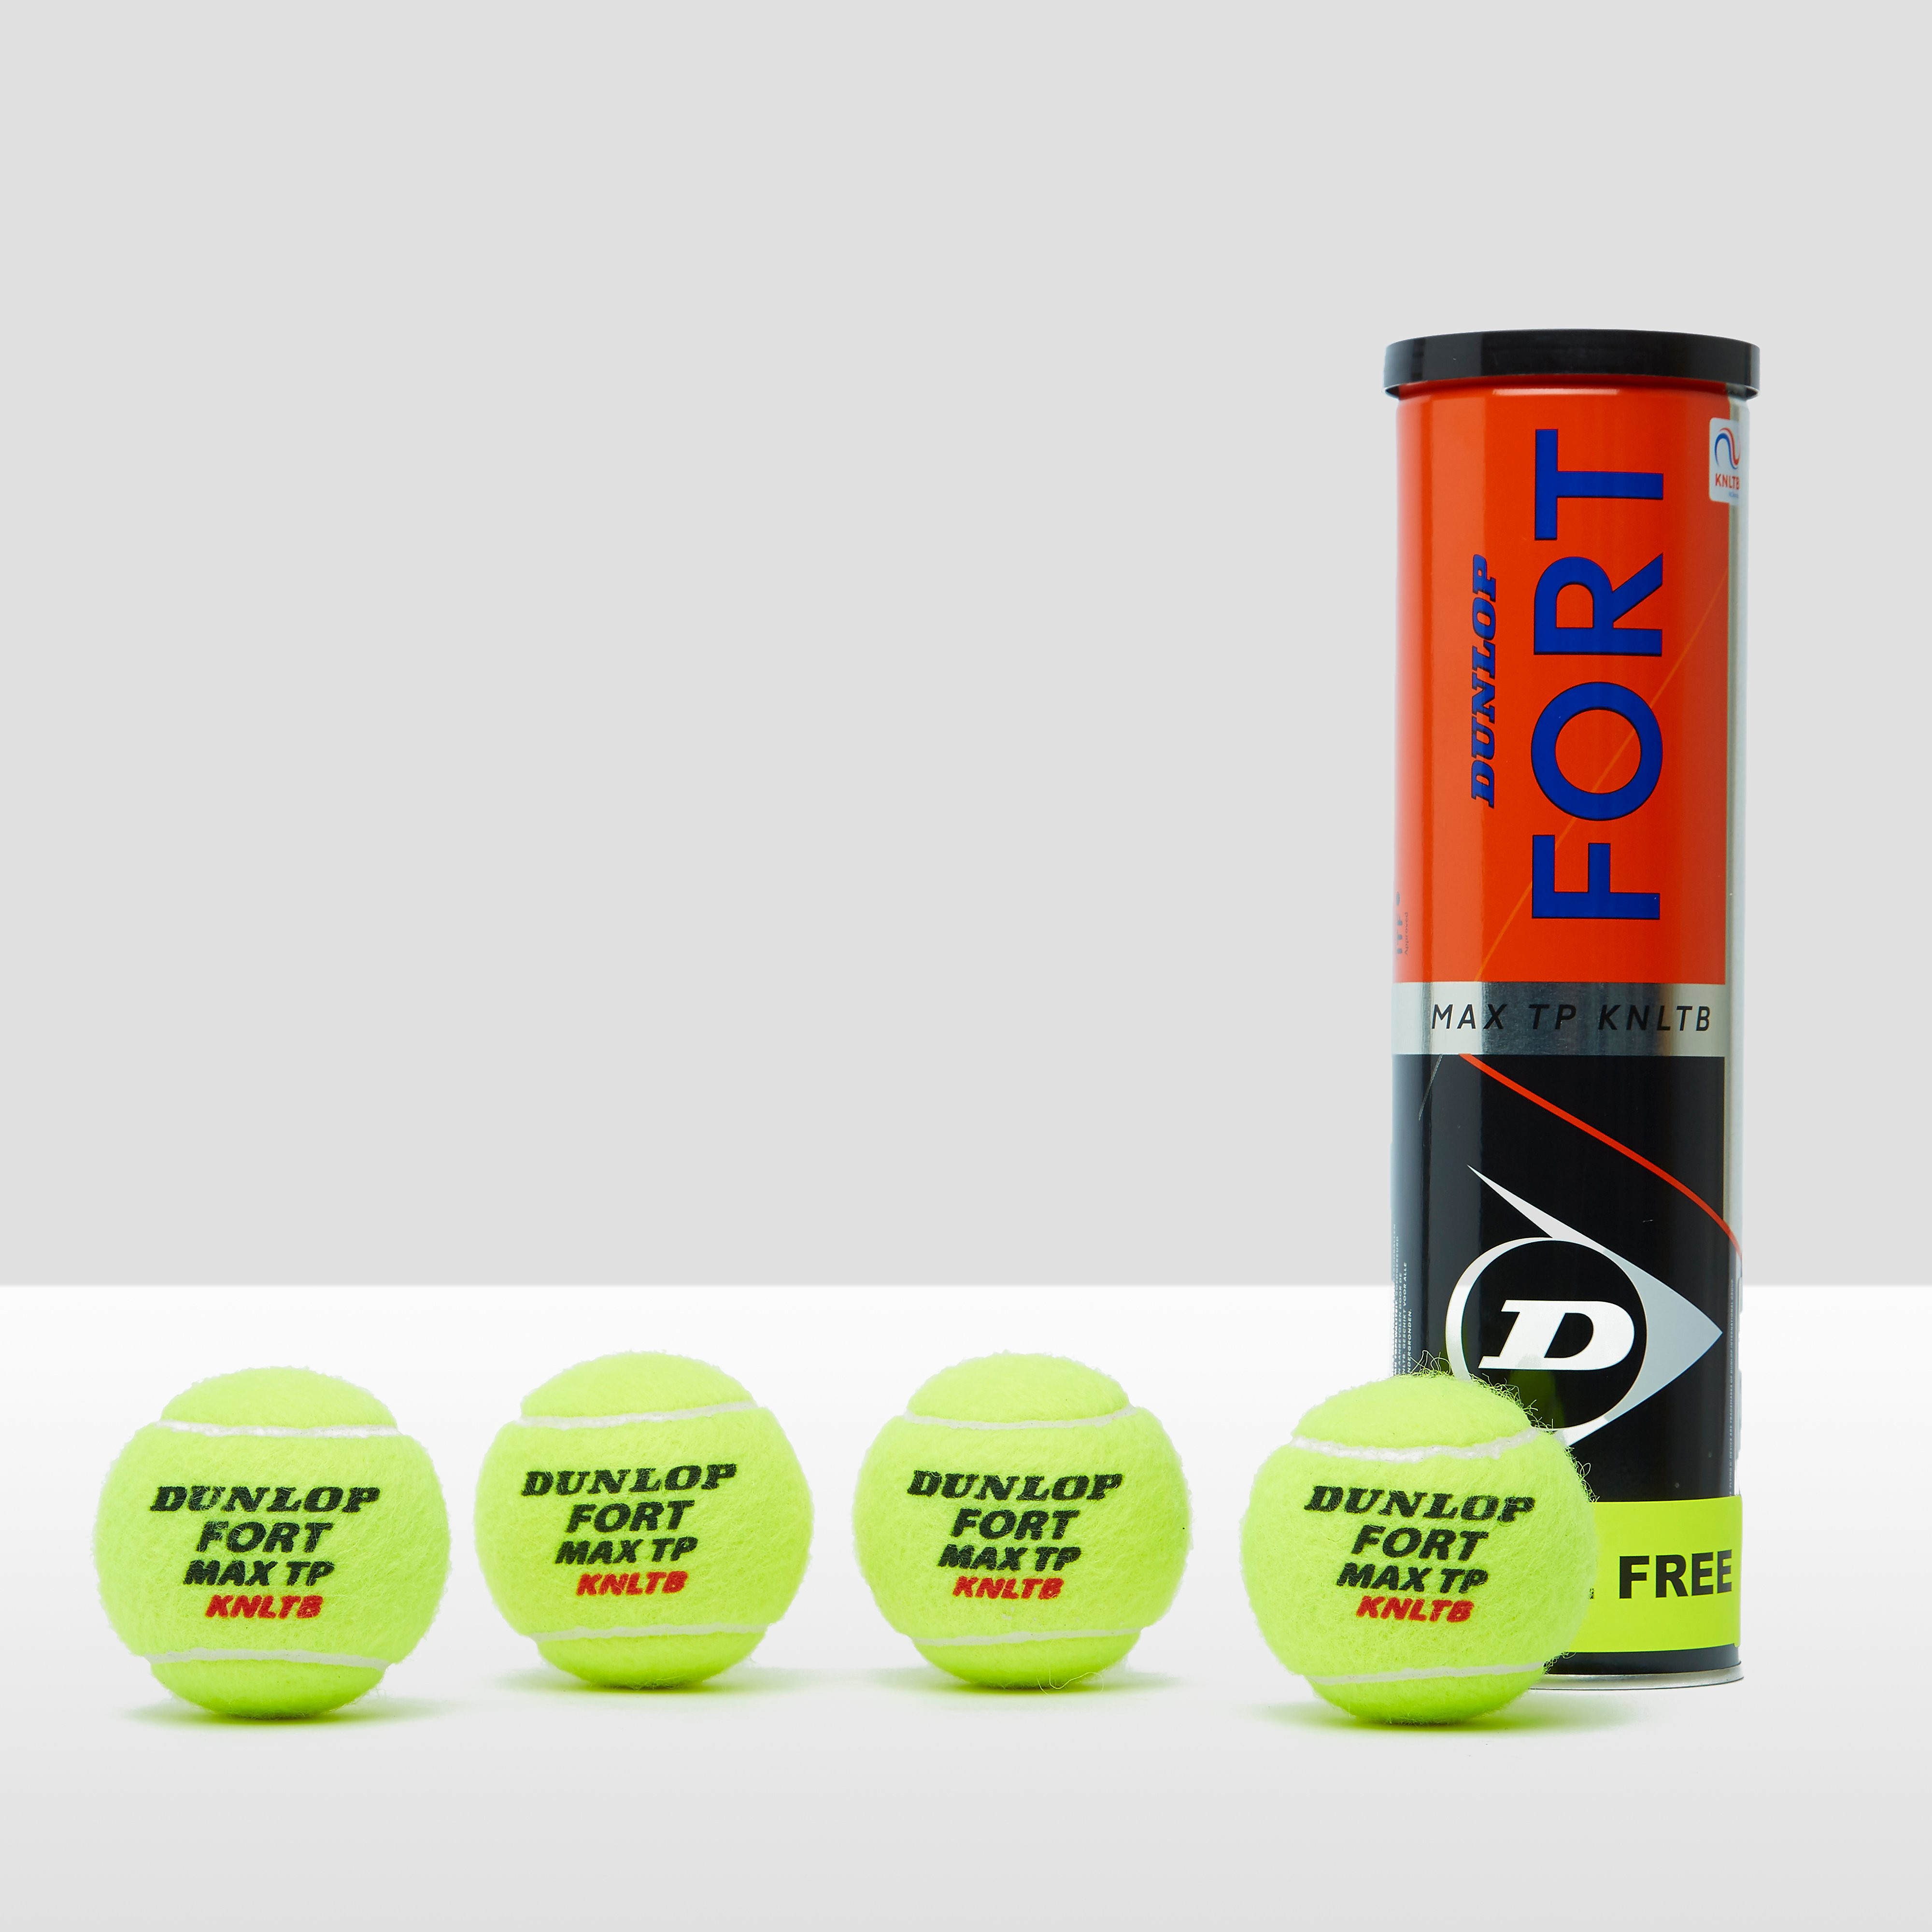 Dunlop dunlop fort max tp tennisballen 31 pack